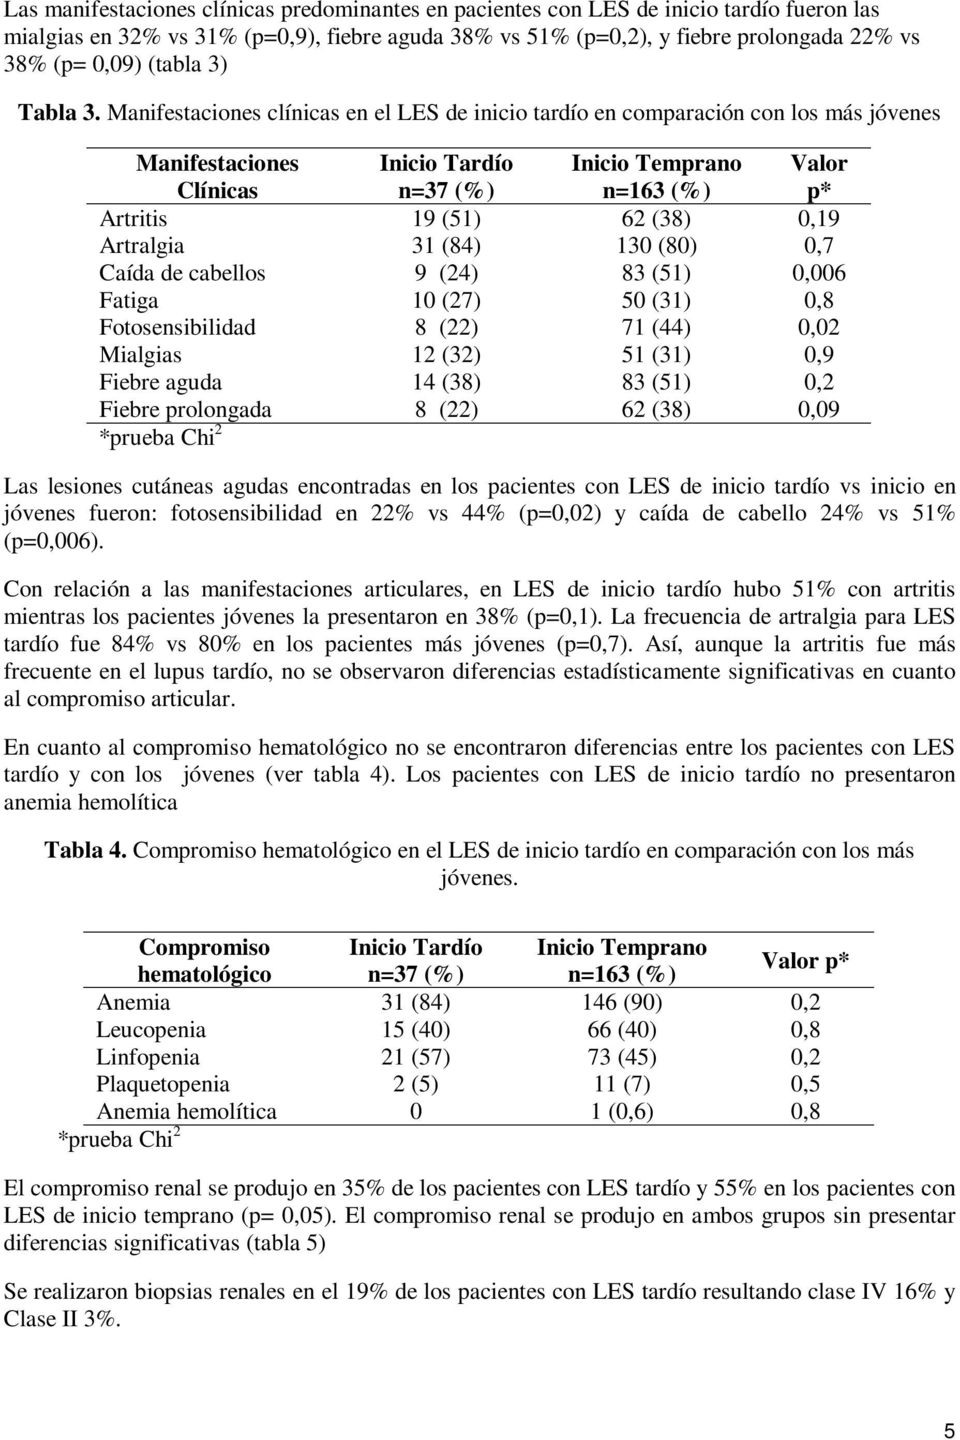 Manifestaciones clínicas en el LES de inicio tardío en comparación con los más jóvenes Manifestaciones Clínicas Inicio Tardío n=37 (%) Inicio Temprano n=163 (%) Valor p* Artritis 19 (51) 62 (38) 0,19